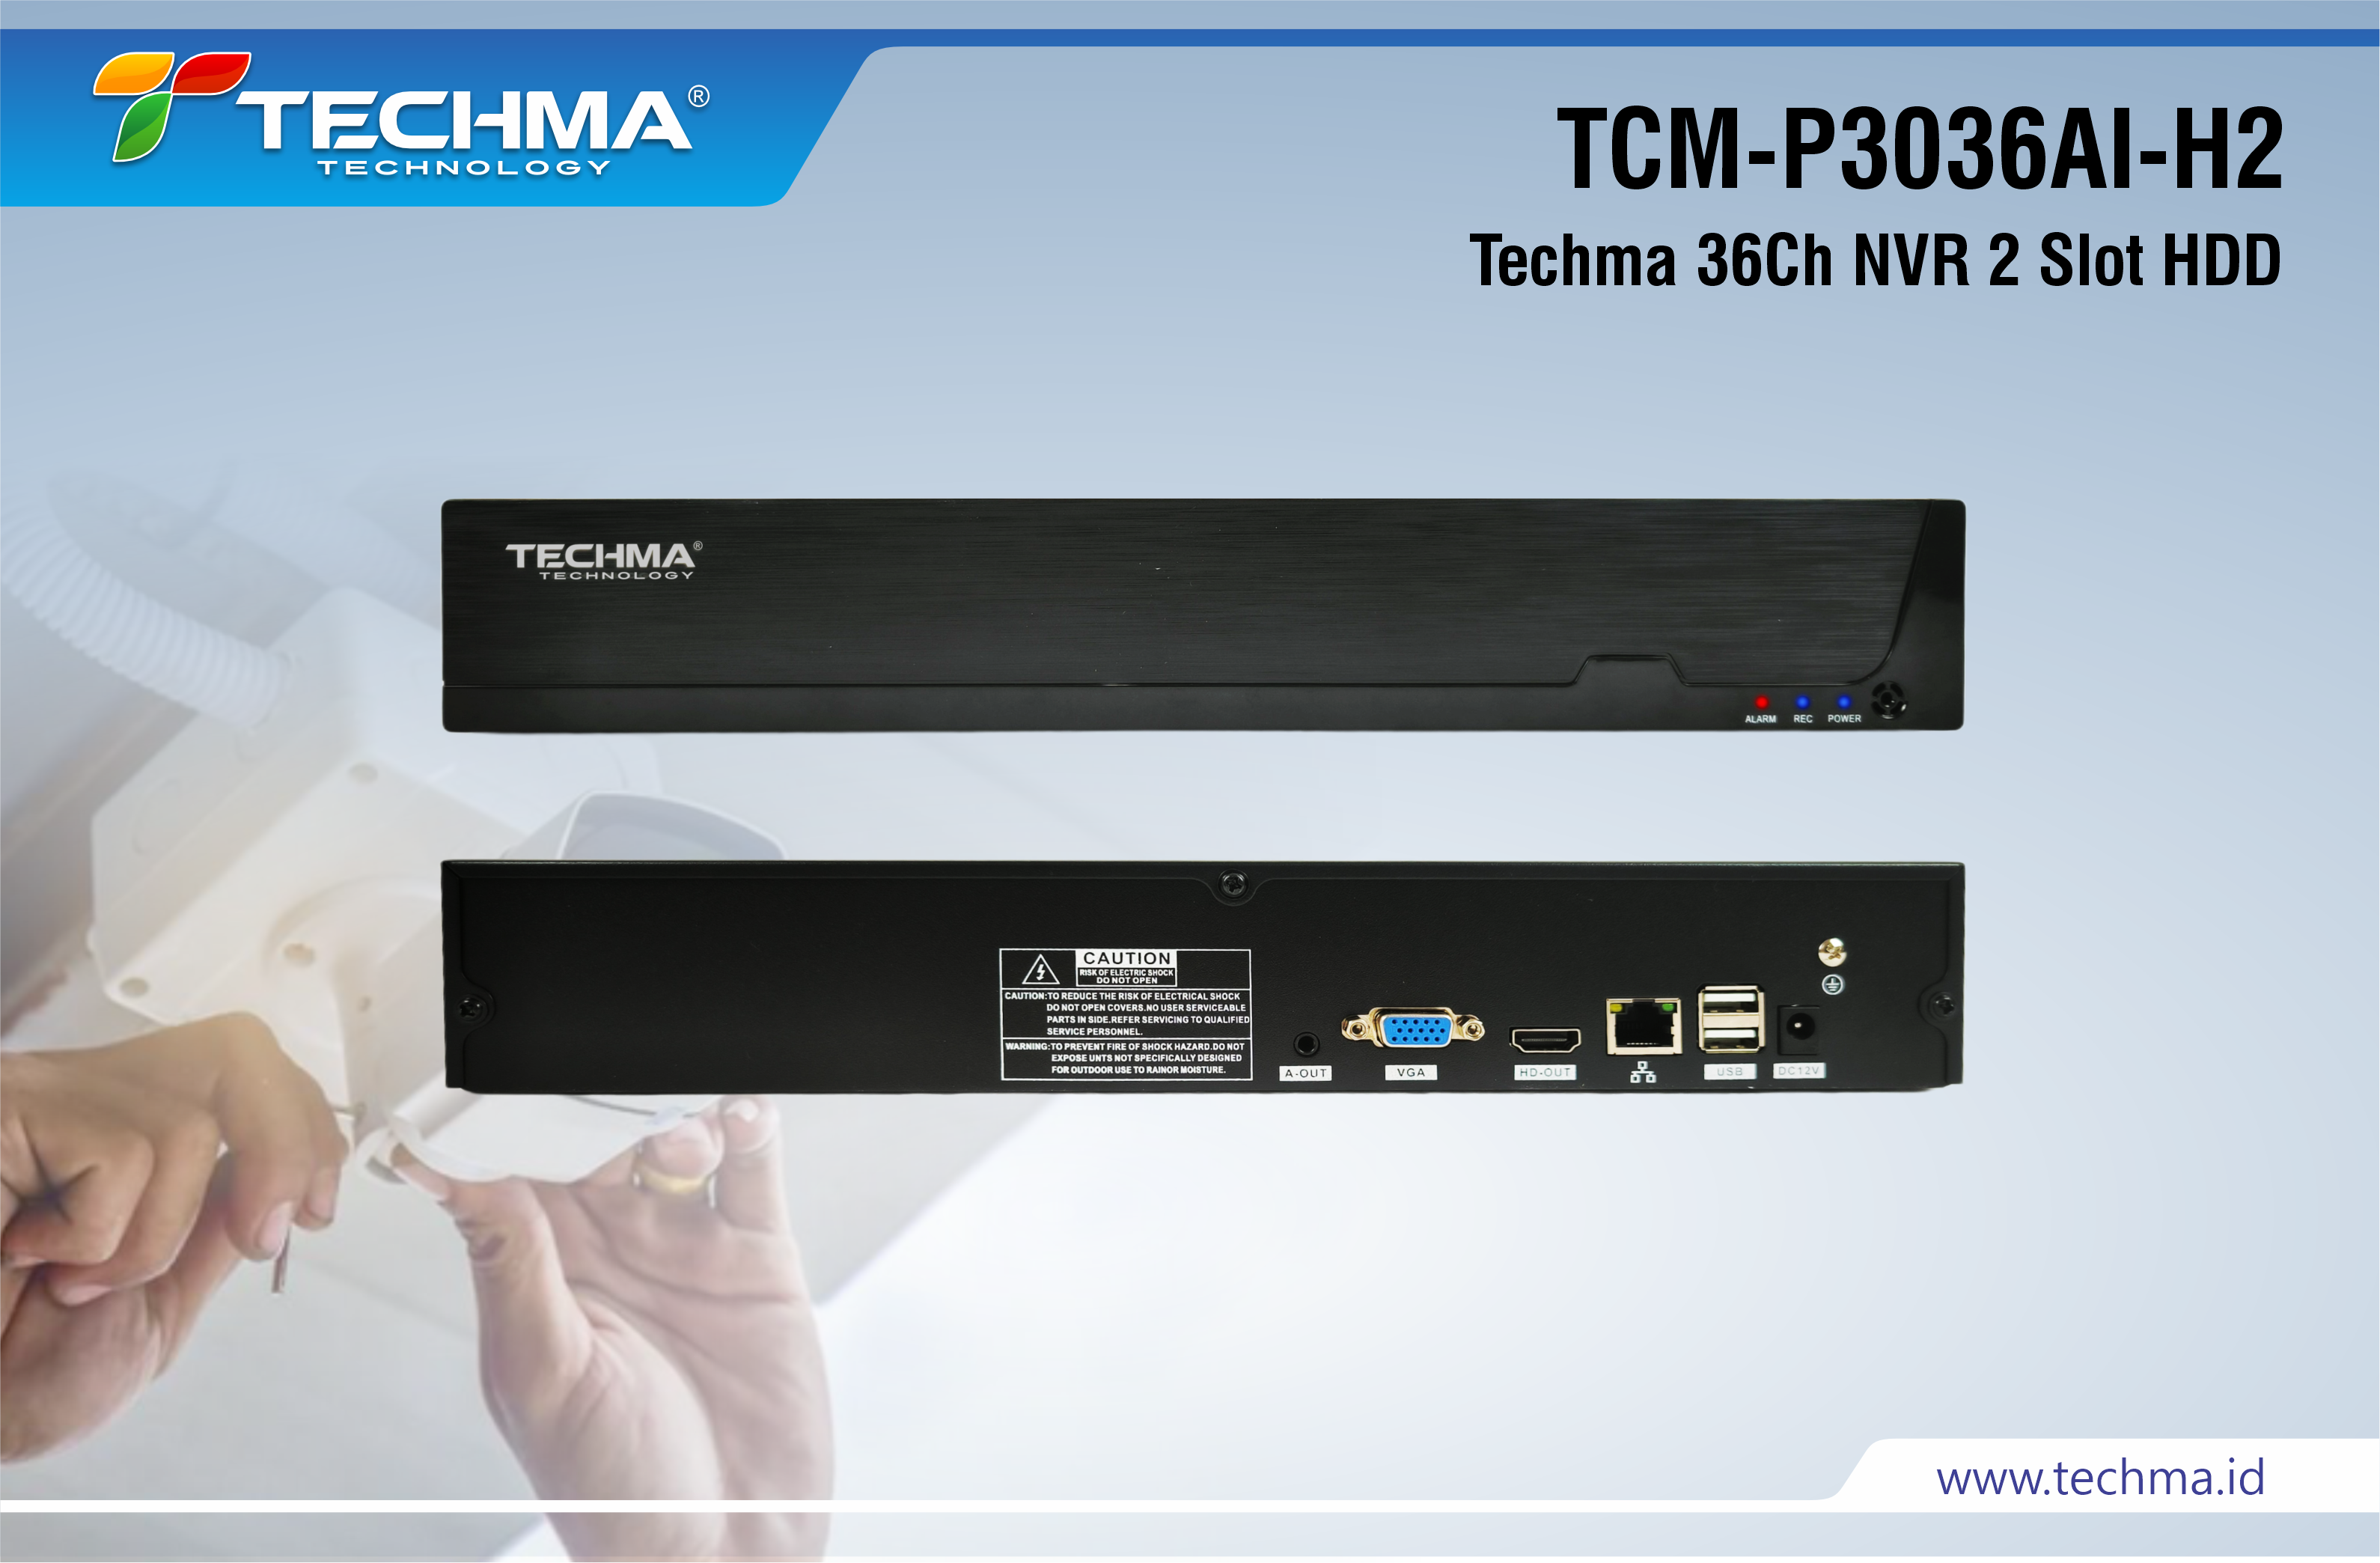 TCM-P3036AI-H2